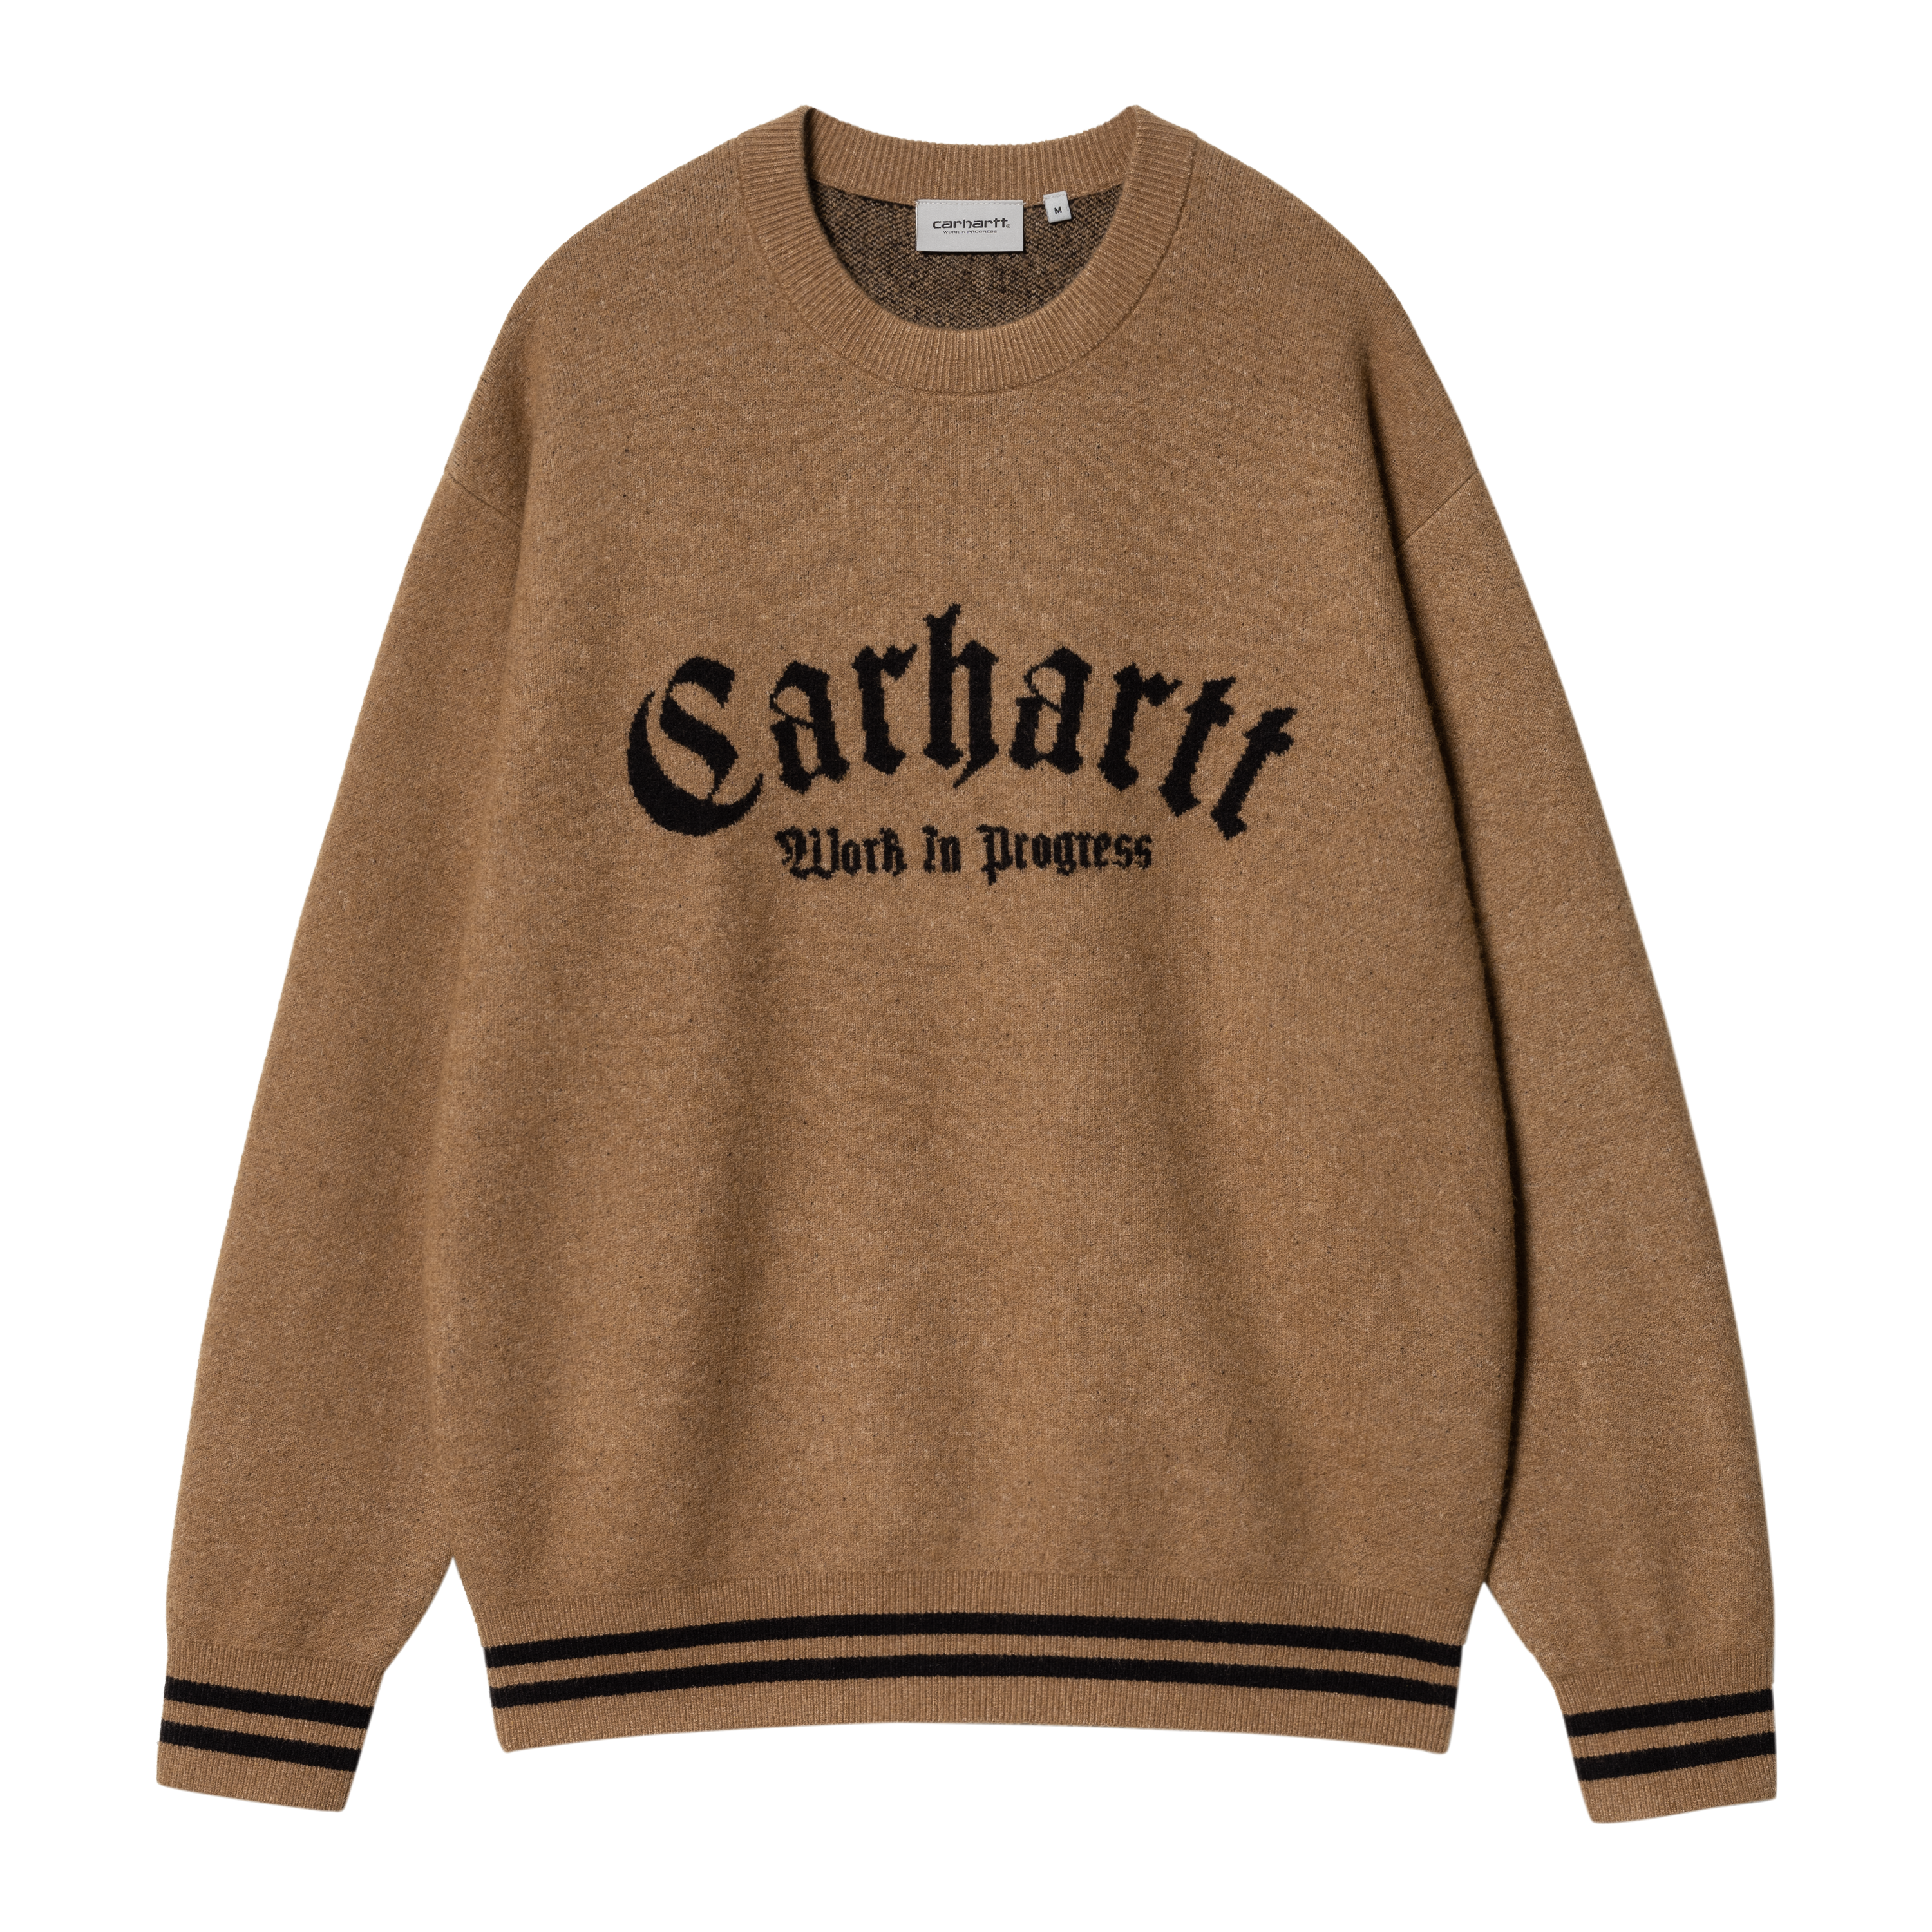 Carhartt WIP Onyx Sweater in Marrone